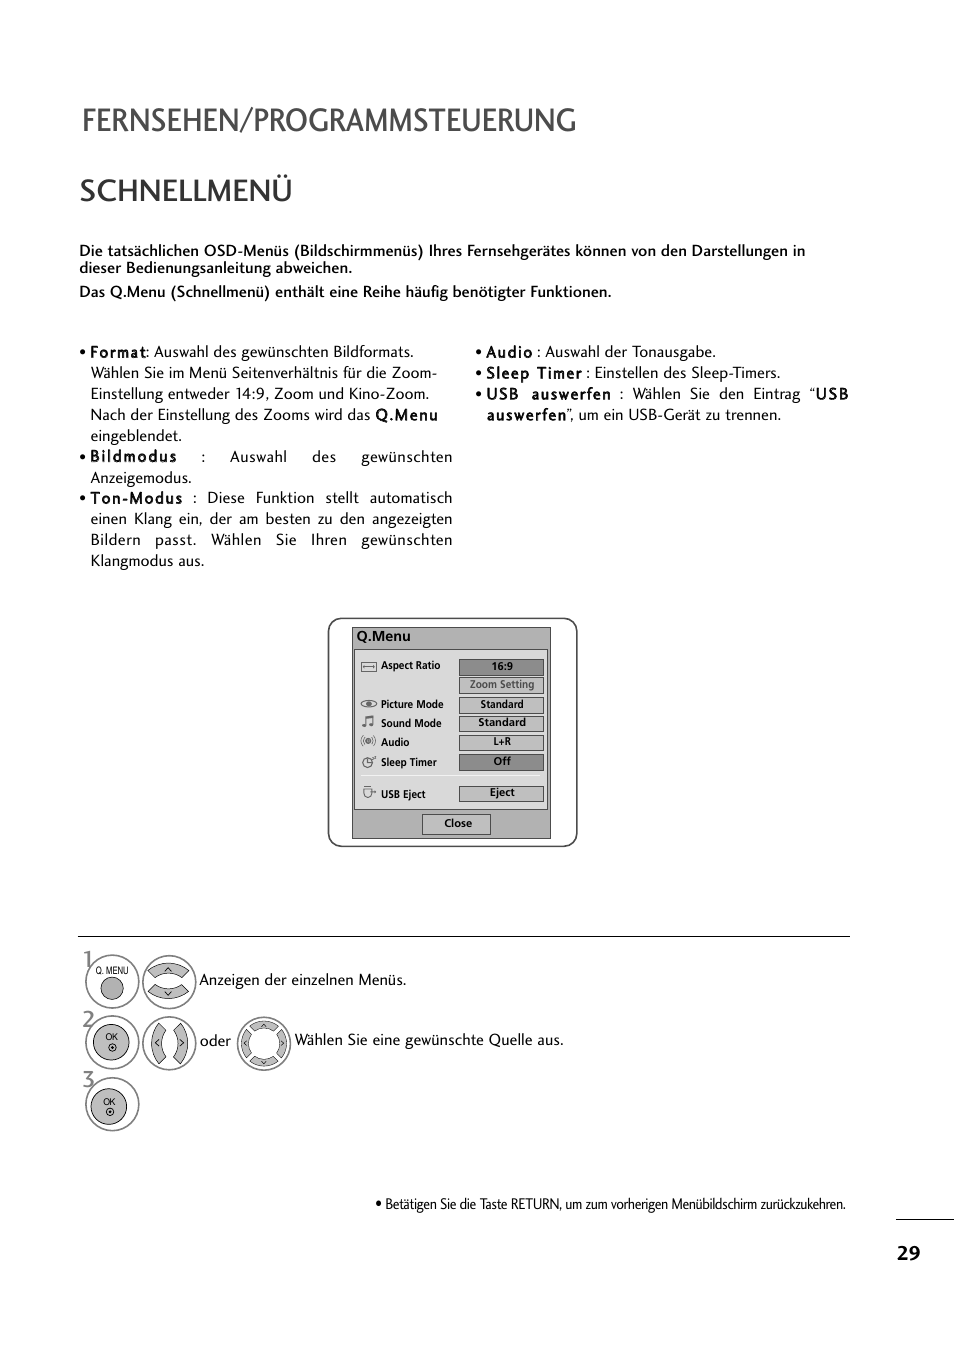 Schnellmenü, Fernsehen/programmsteuerung | LG M2794DP-PZ Benutzerhandbuch | Seite 30 / 111